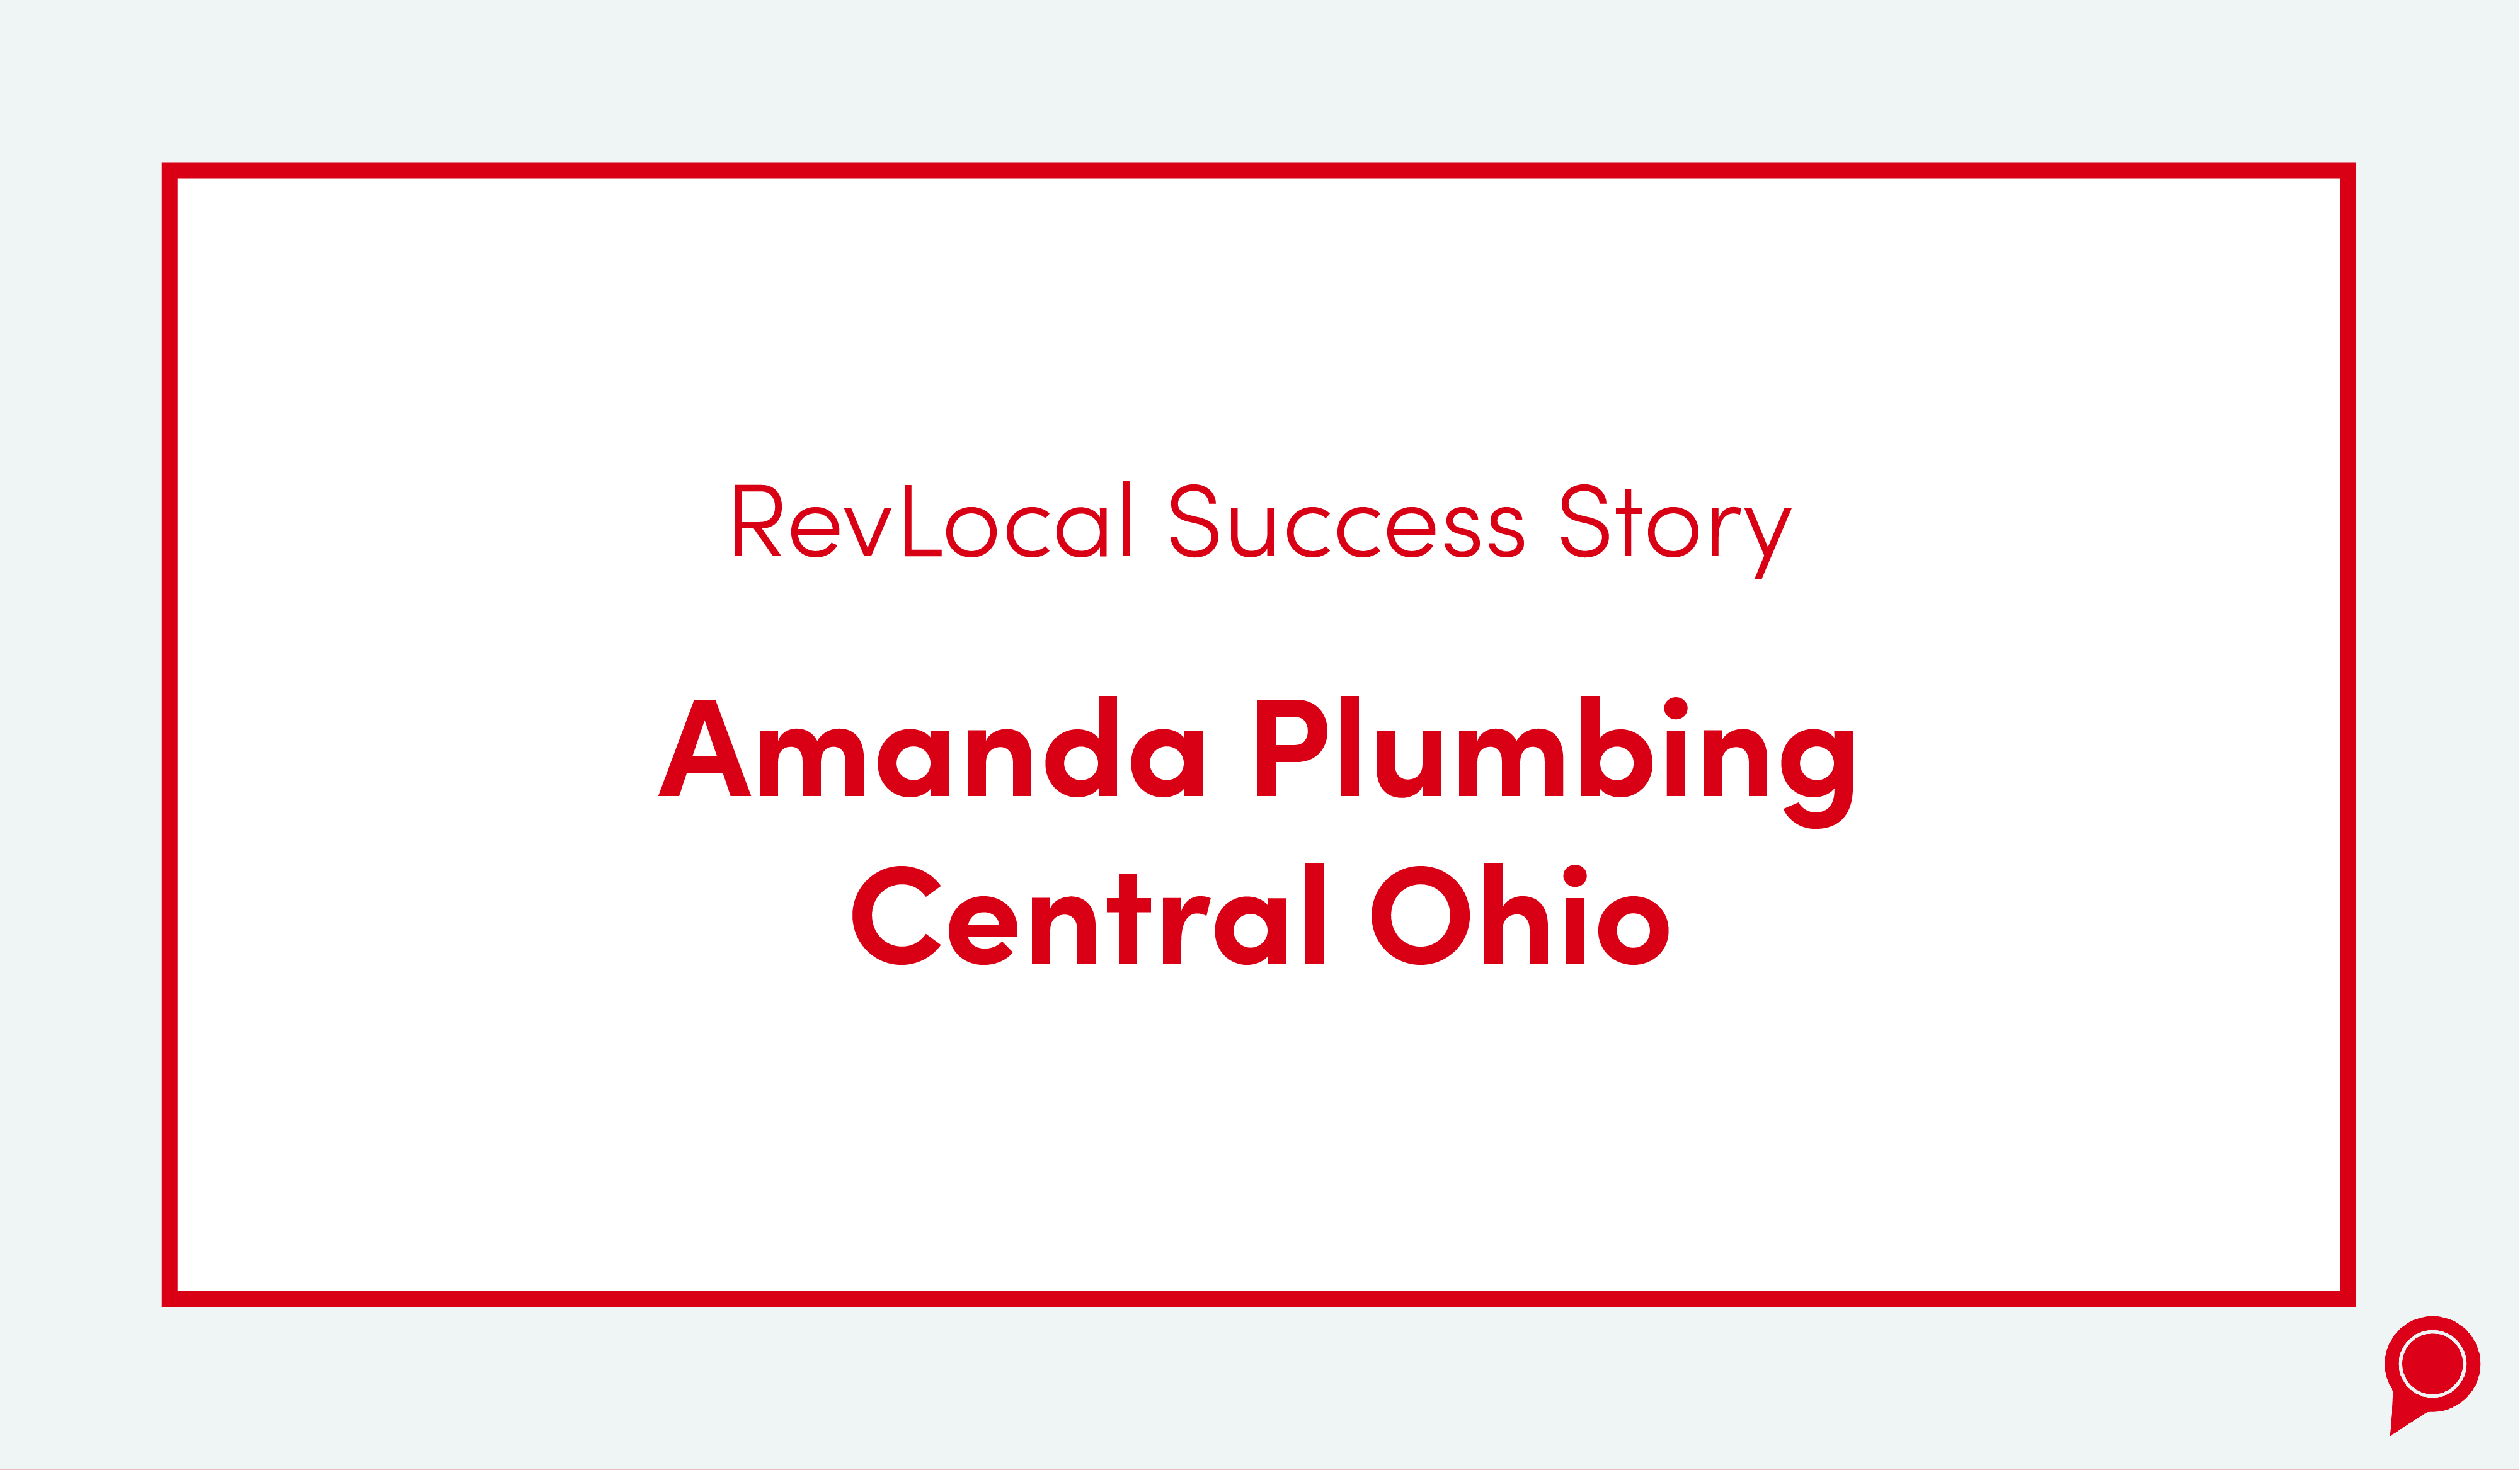 Amanda Plumbing Central Ohio